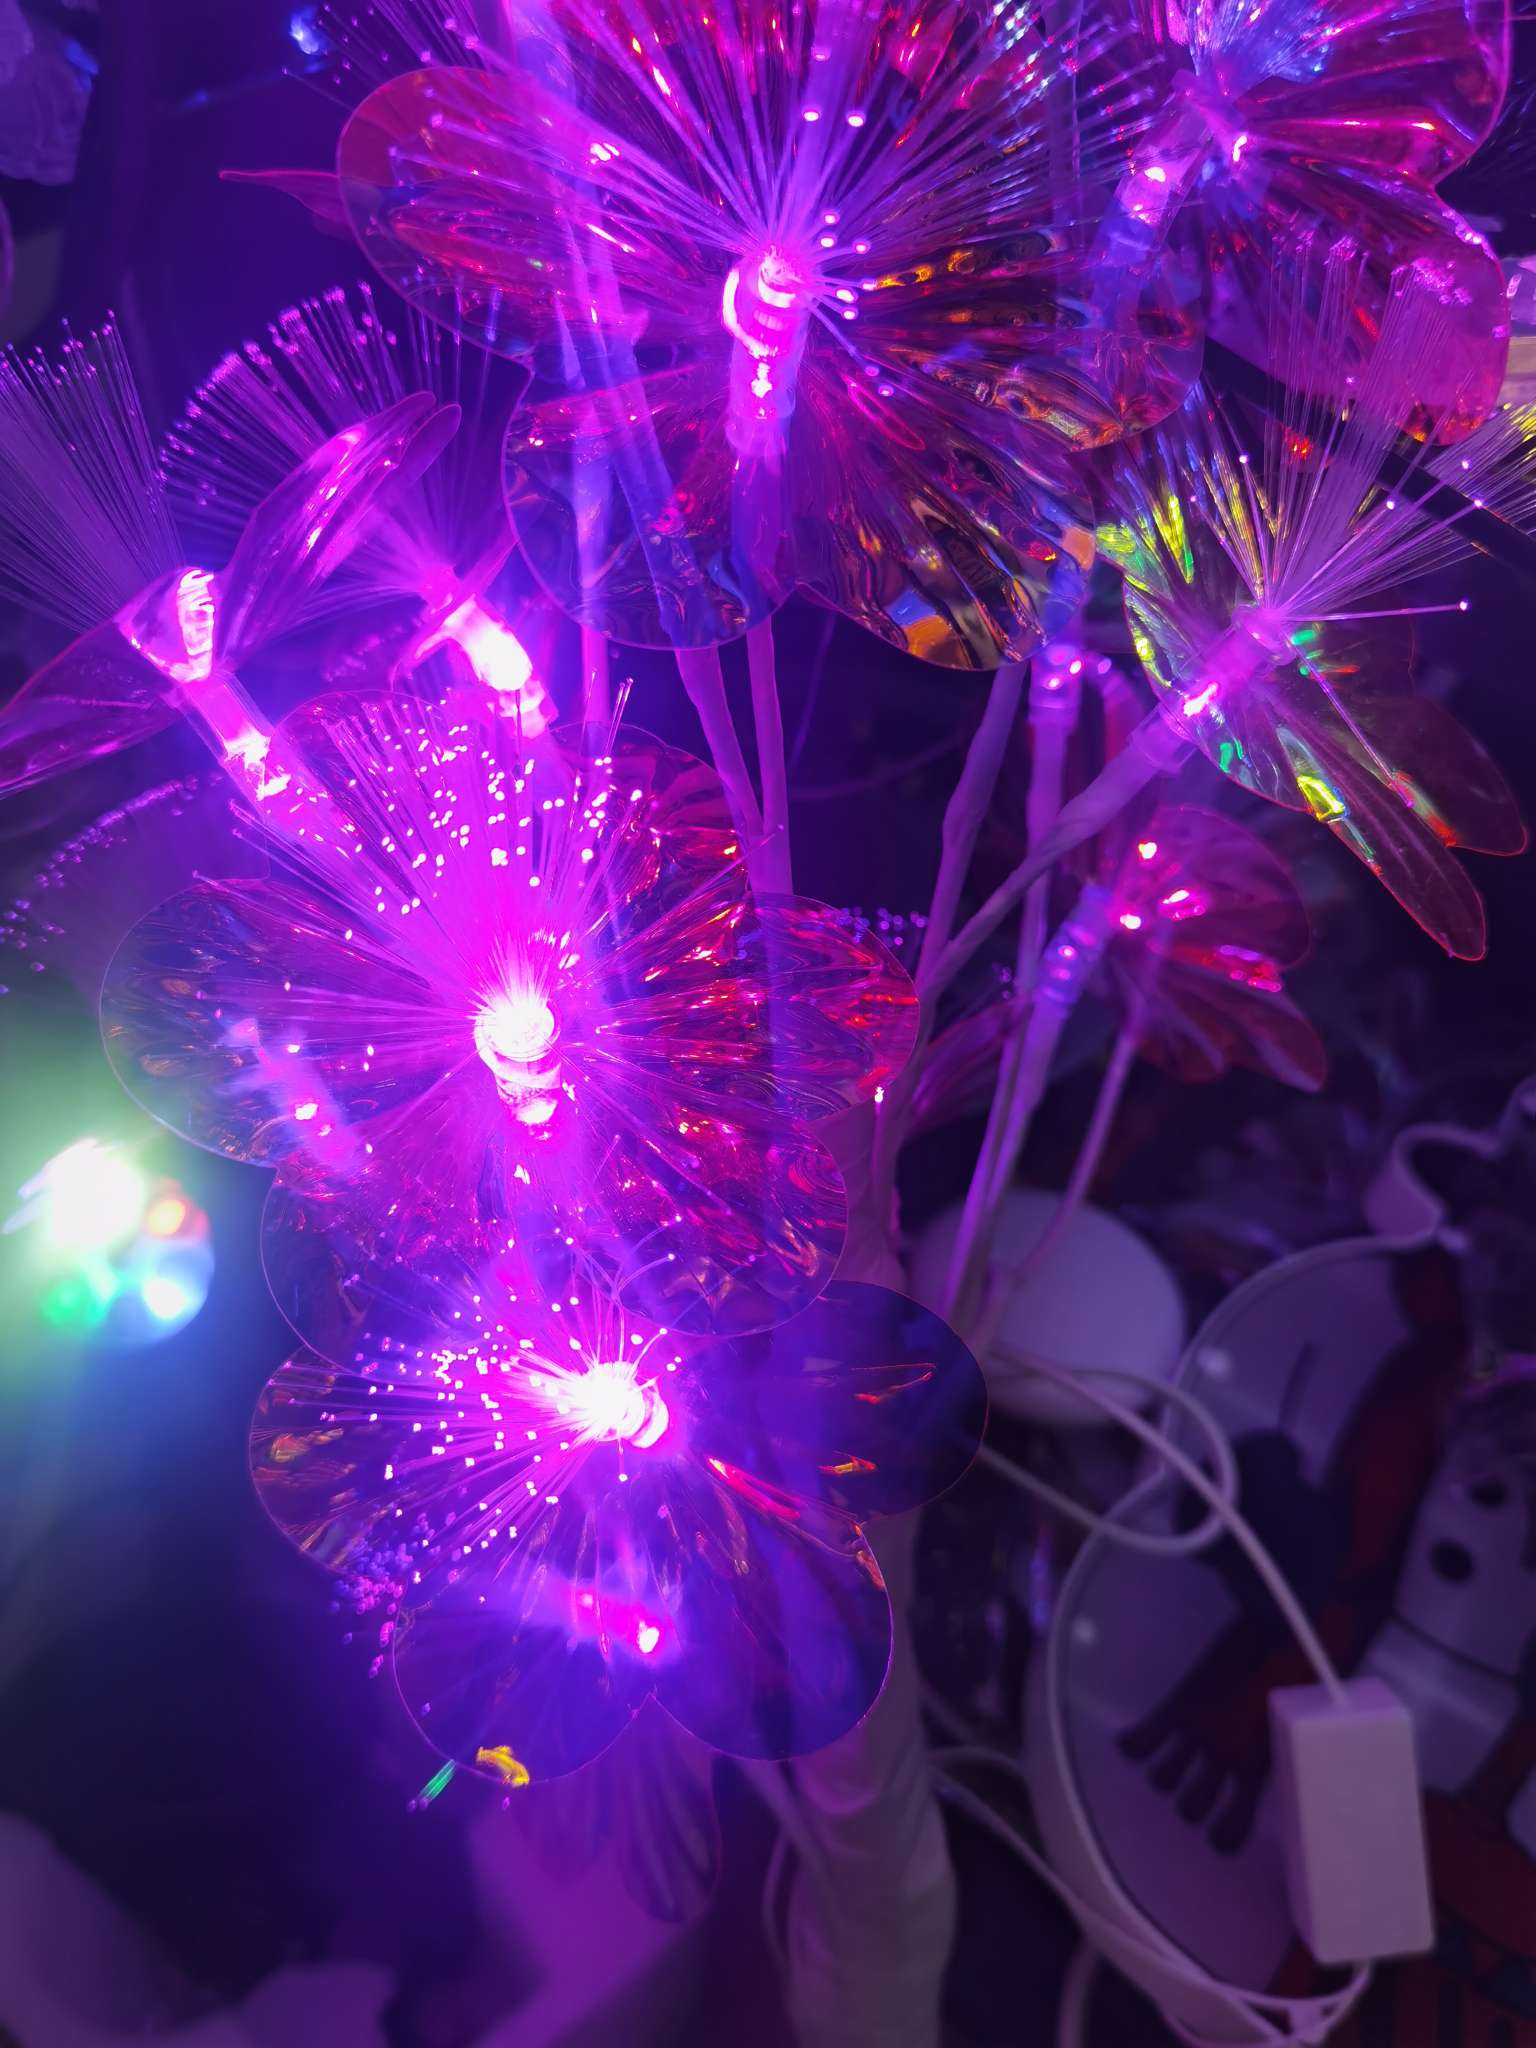 室外LED灯串 灯饰照明 节日灯户外 装饰气球灯串 LED泡泡鱼 彩色晶瓷画 灯光璀璨 美丽夜景